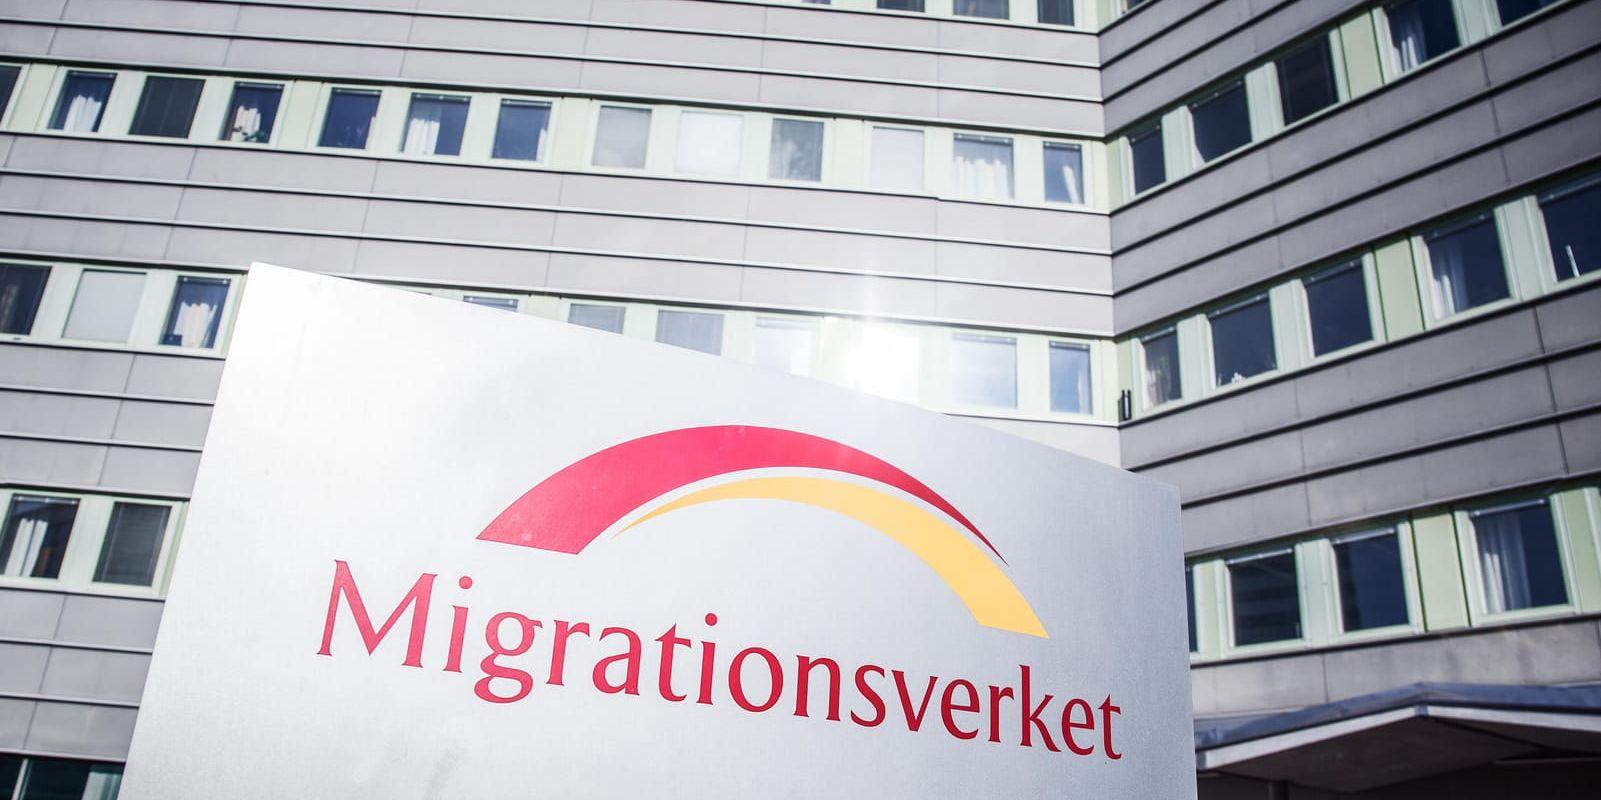 Migrationsverkets budget har varit 800 miljoner kronor lägre jämfört med 2017. Arkivbild.